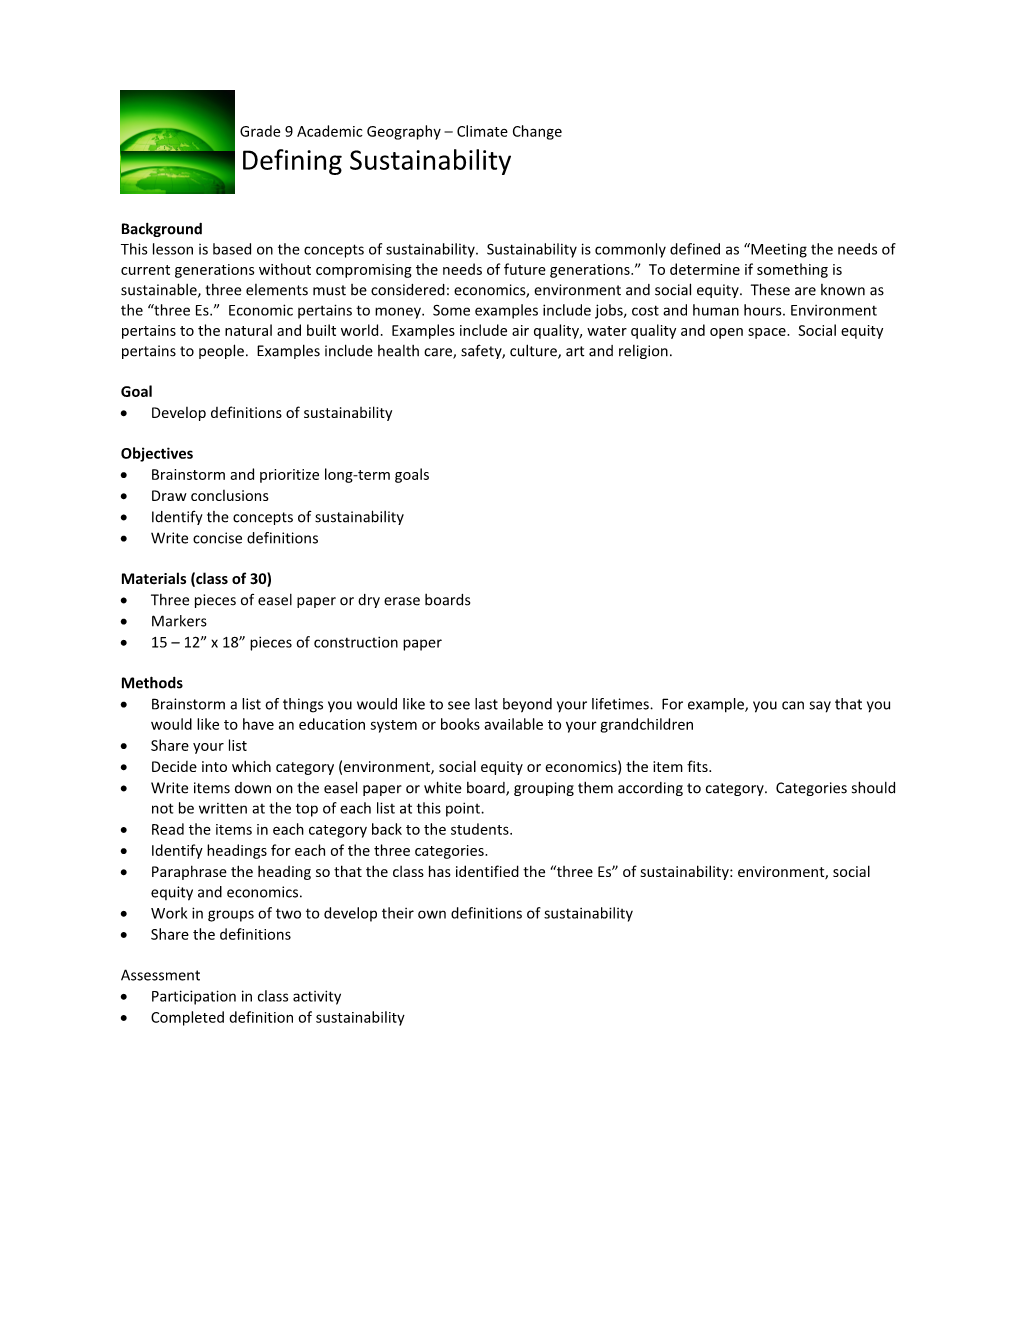 LA - Defining Sustainability